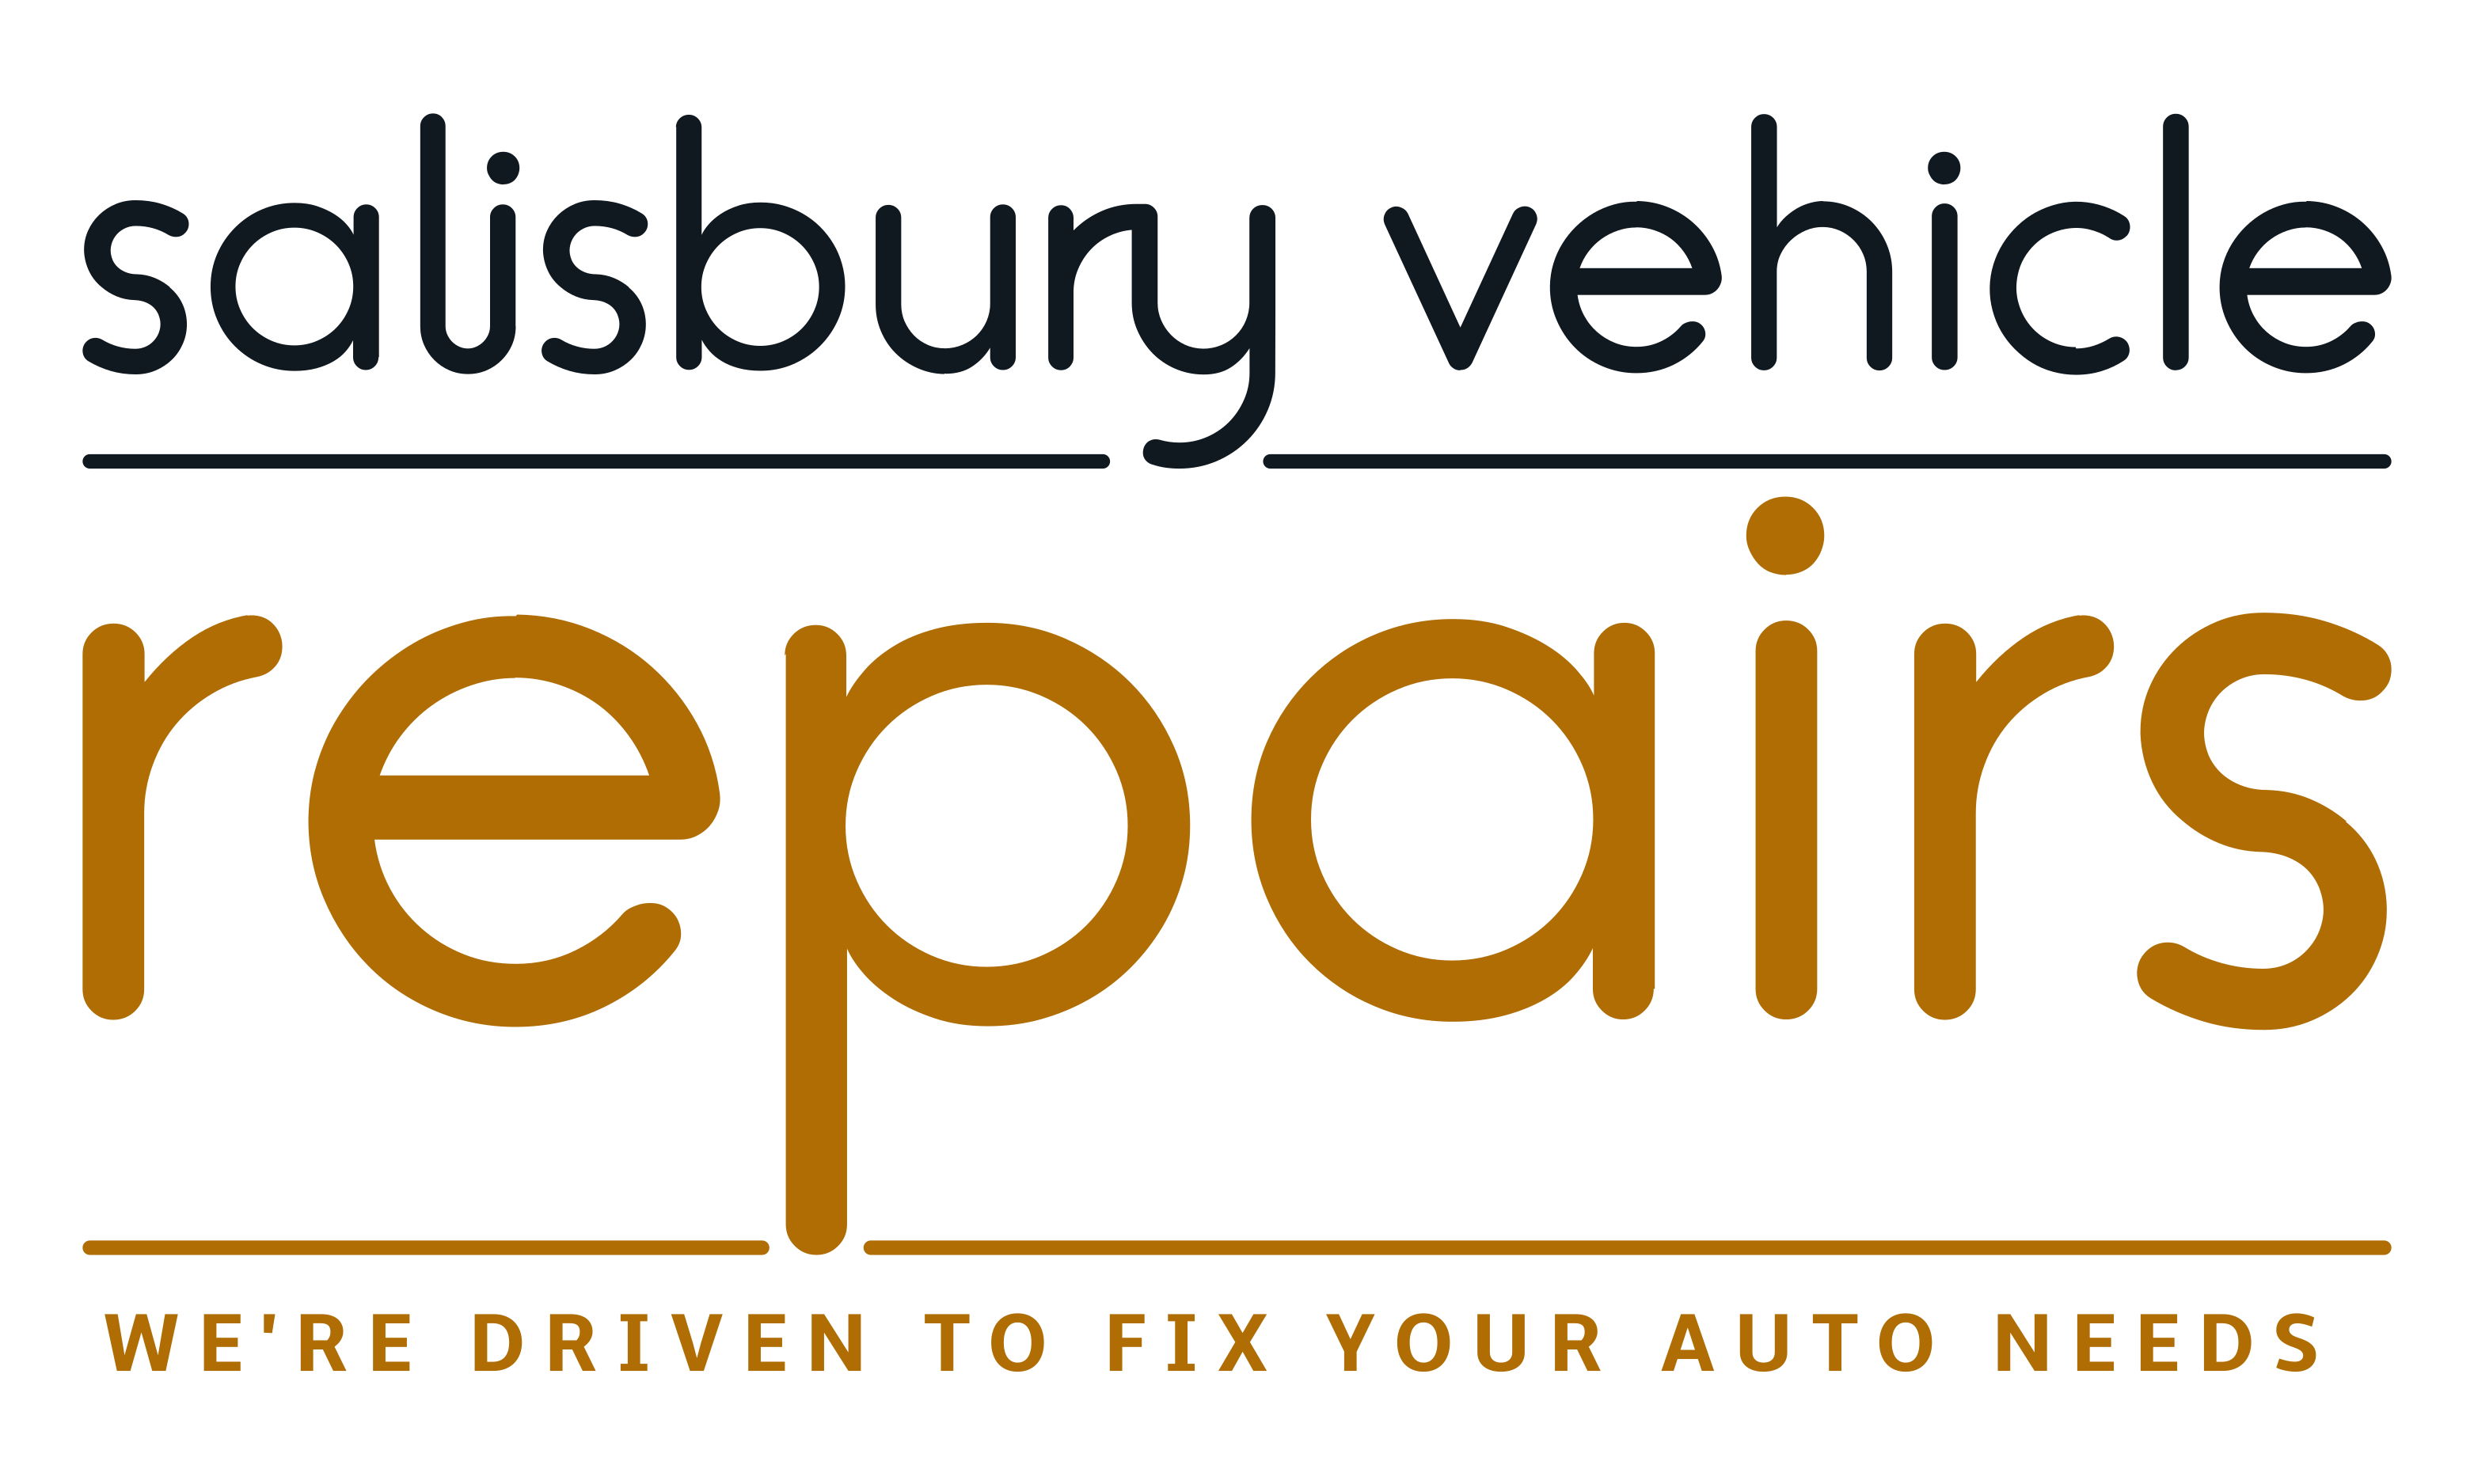 Salisbury Vehicle Repairs